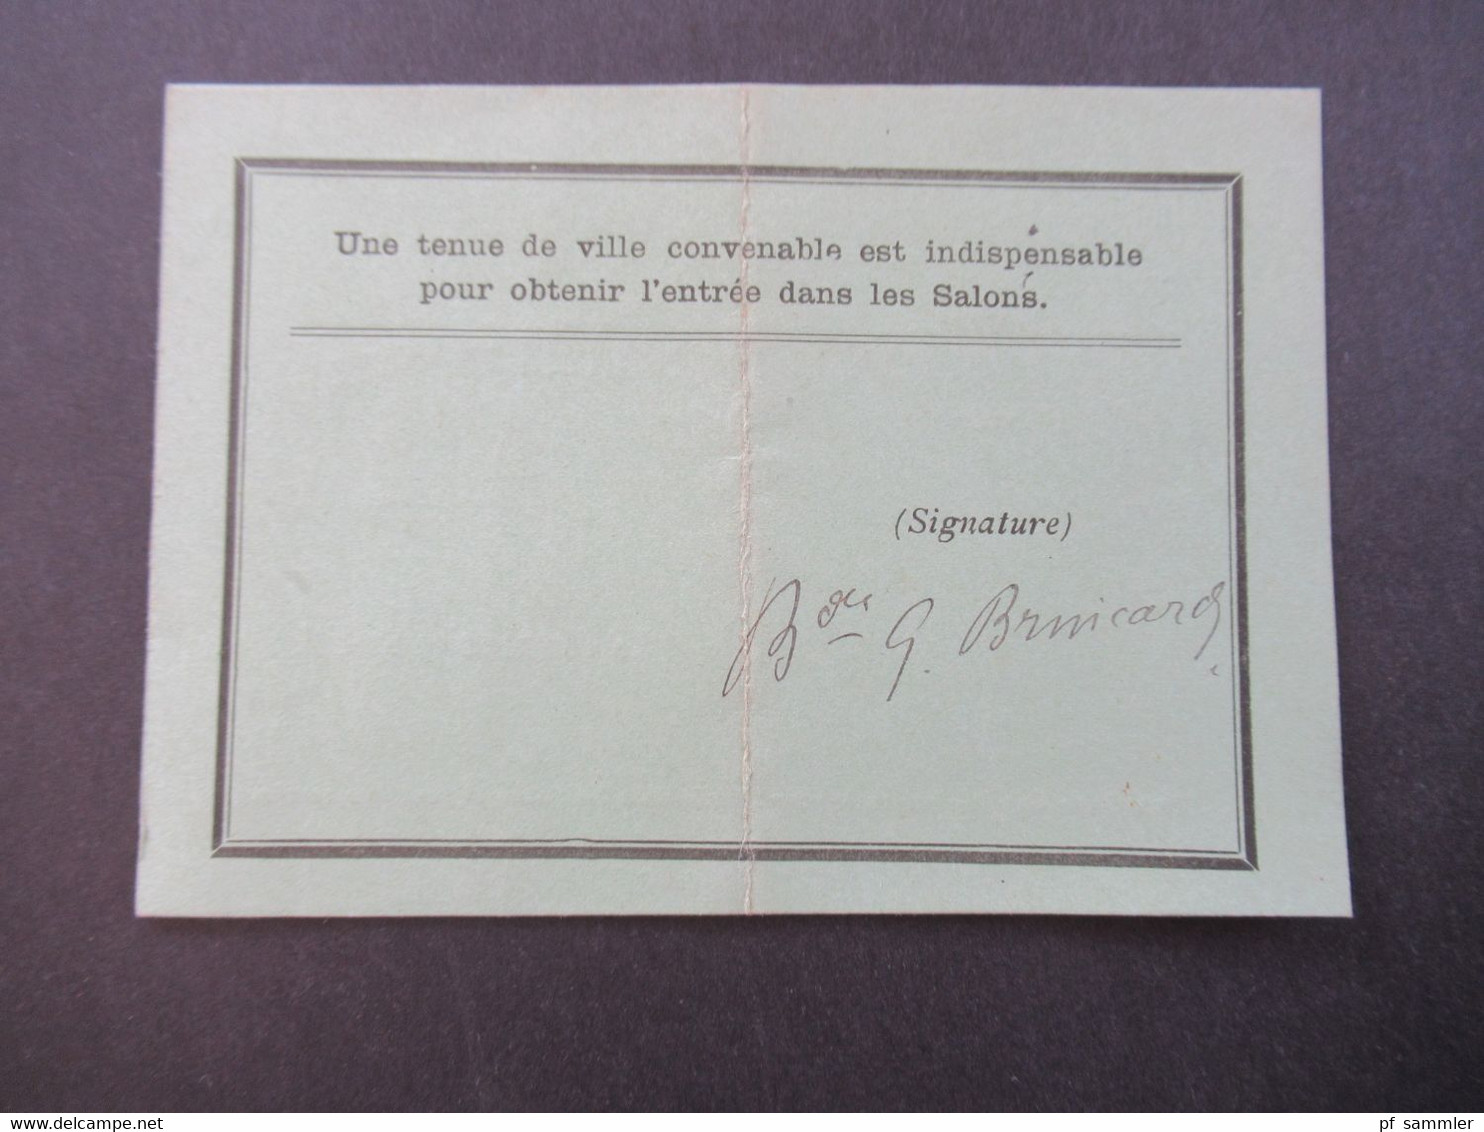 Monaco 20.10.1897 Carte D'Admission Personelle Cercle Des Etrangers De Monaco Valabe Pour Un Jour - Covers & Documents